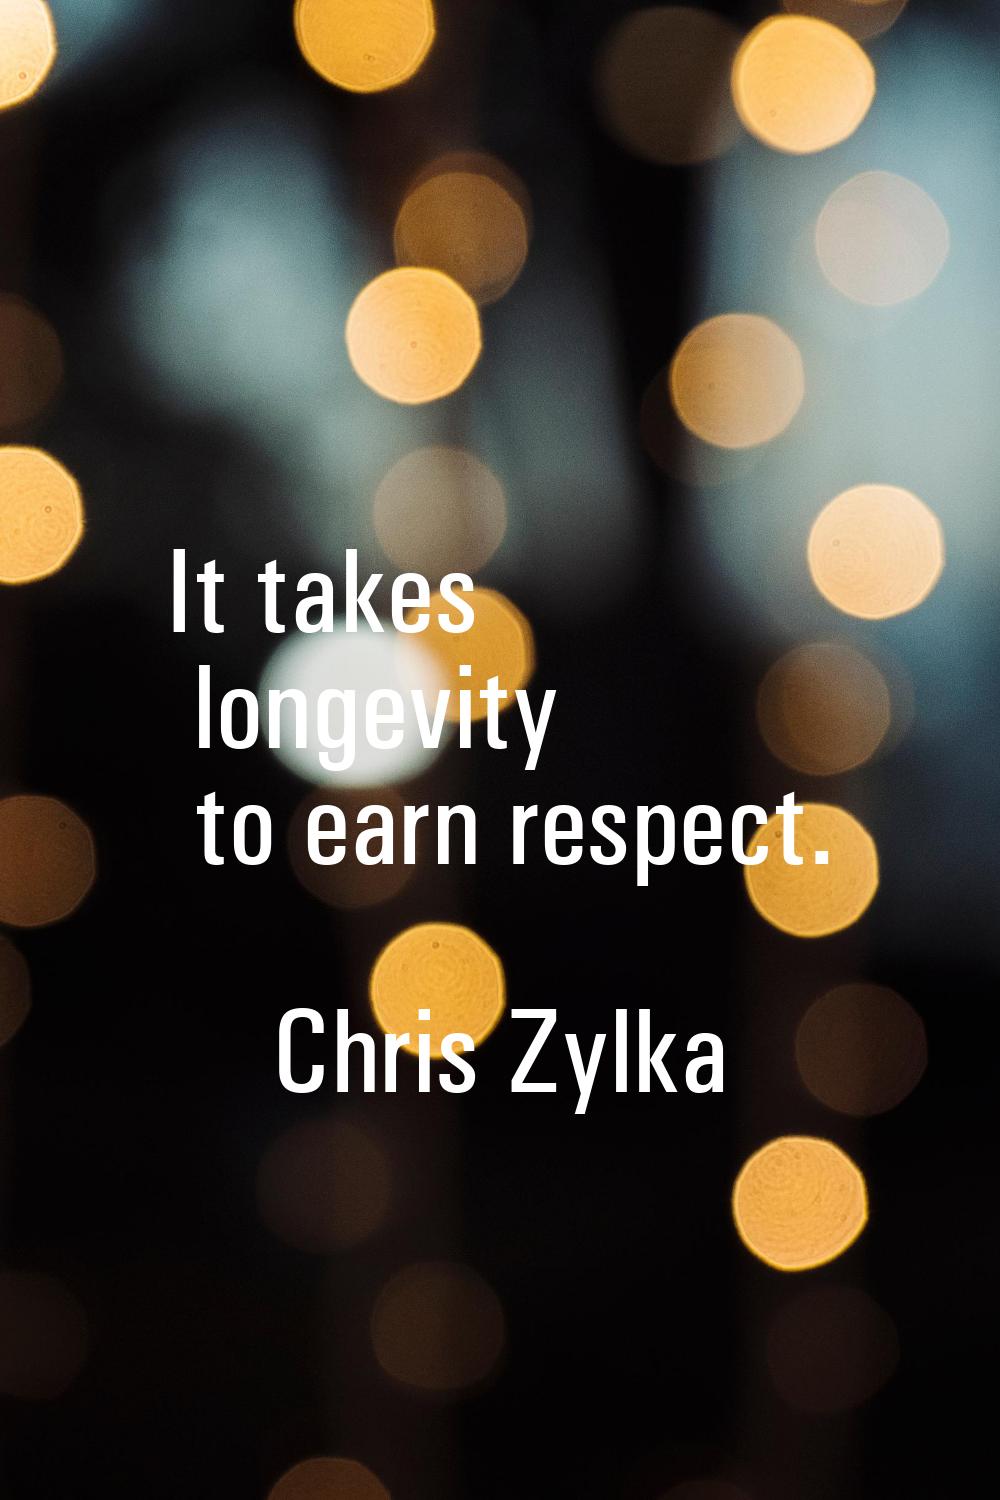 It takes longevity to earn respect.